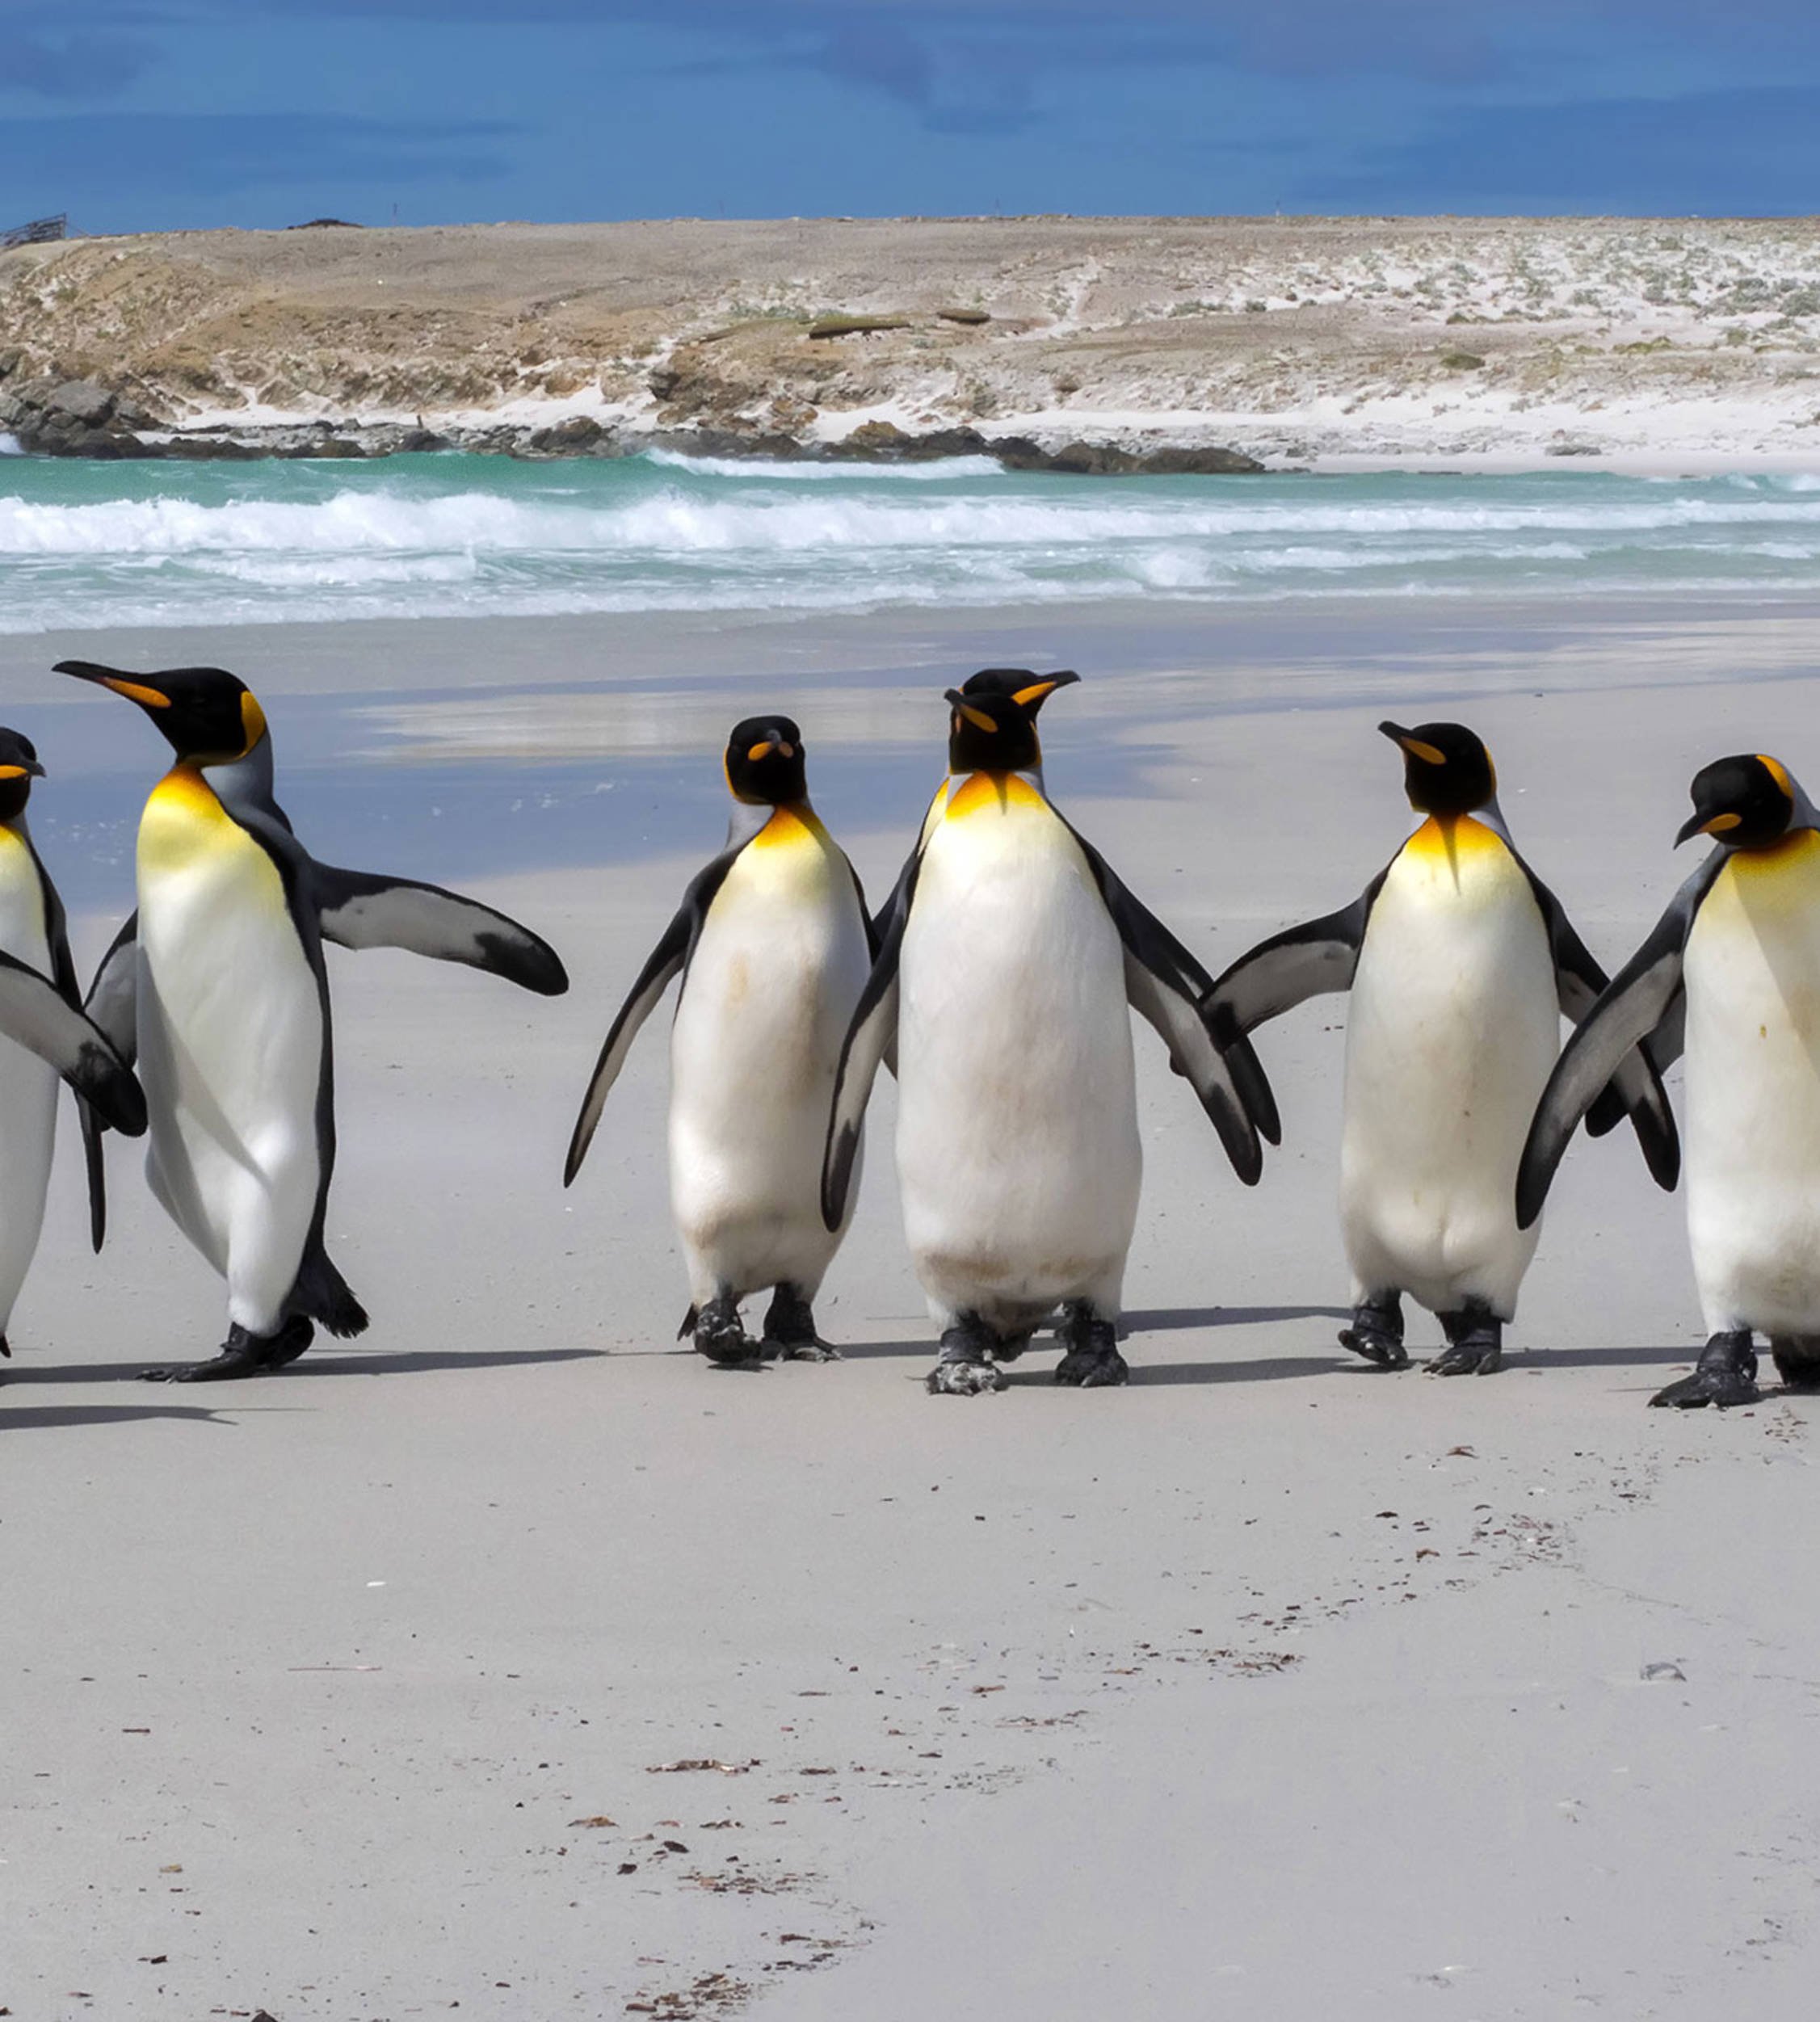 Emperor penguins on a beach